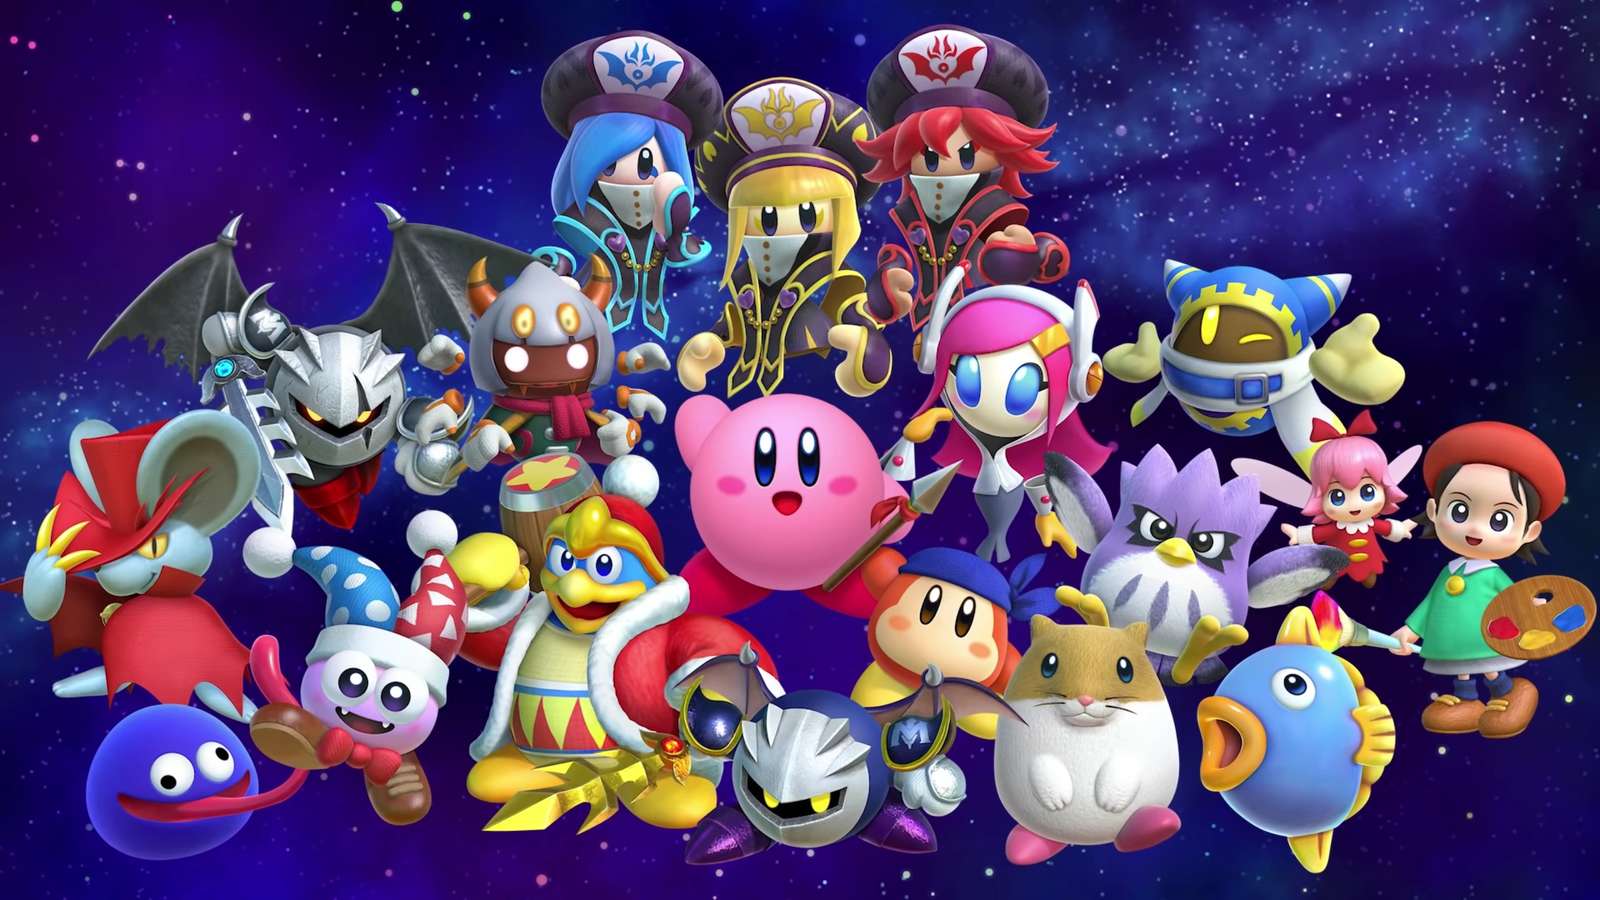 Kirbyfriends online puzzle